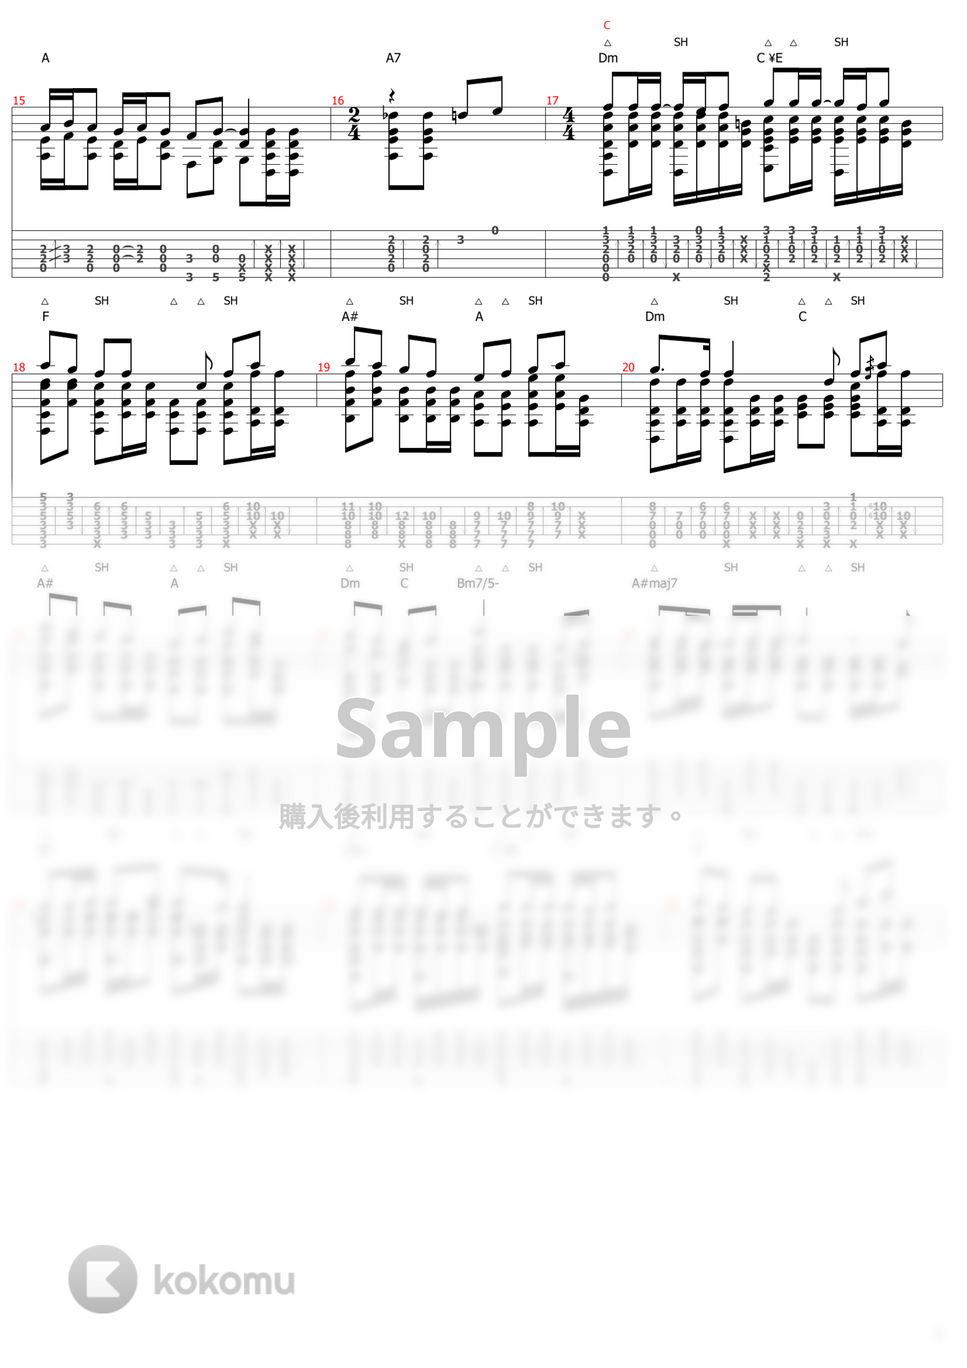 鬼滅の刃 - 明け星 (ソロギター) by おさむらいさん